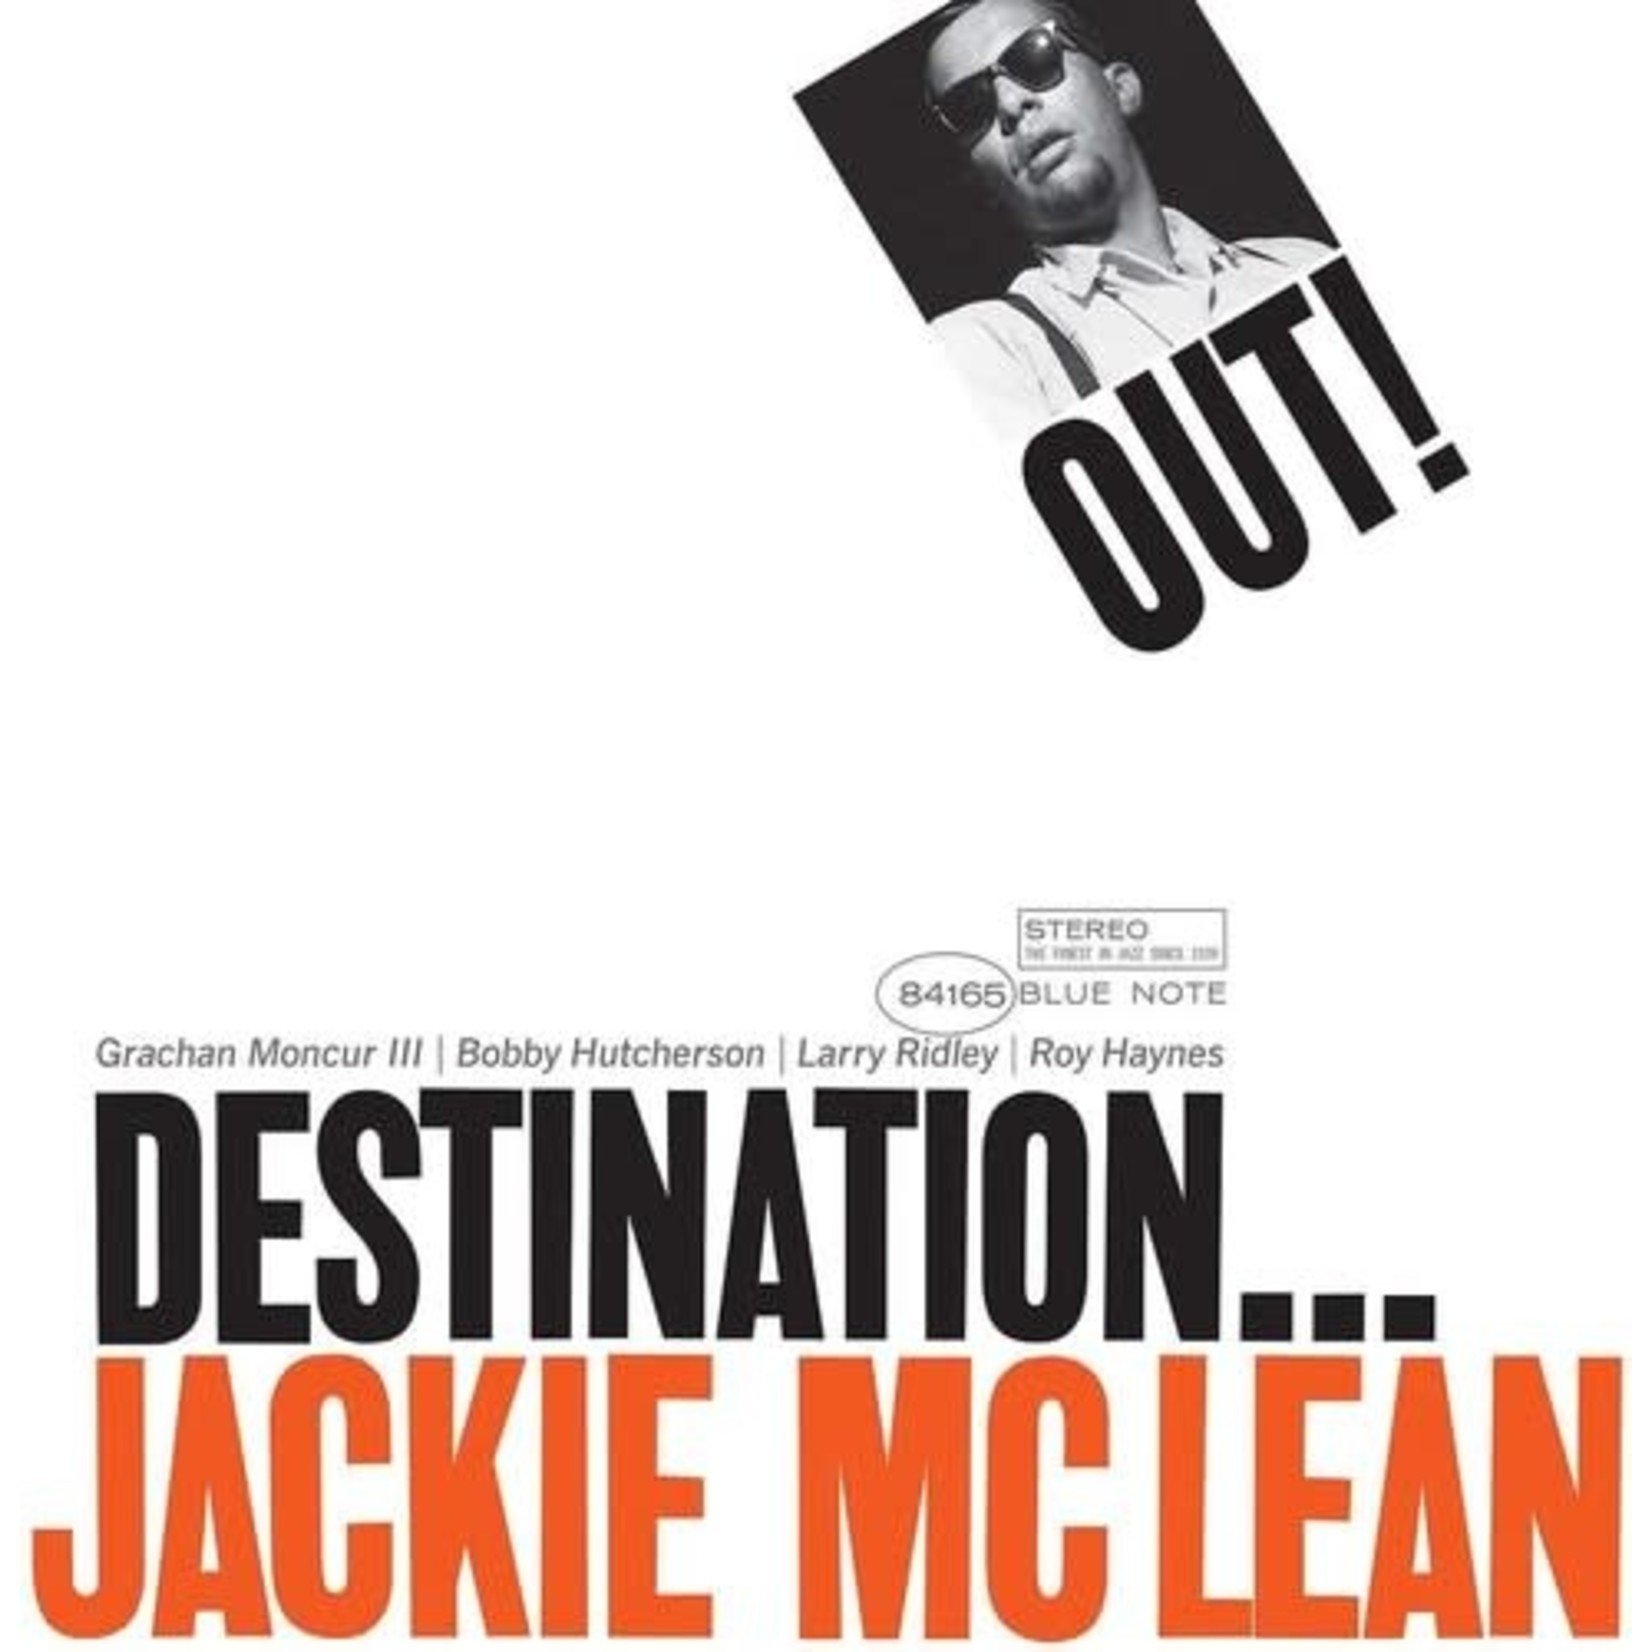 Jackie McLean - Destination Out! (Blue Note Classic Vinyl Series) [LP]